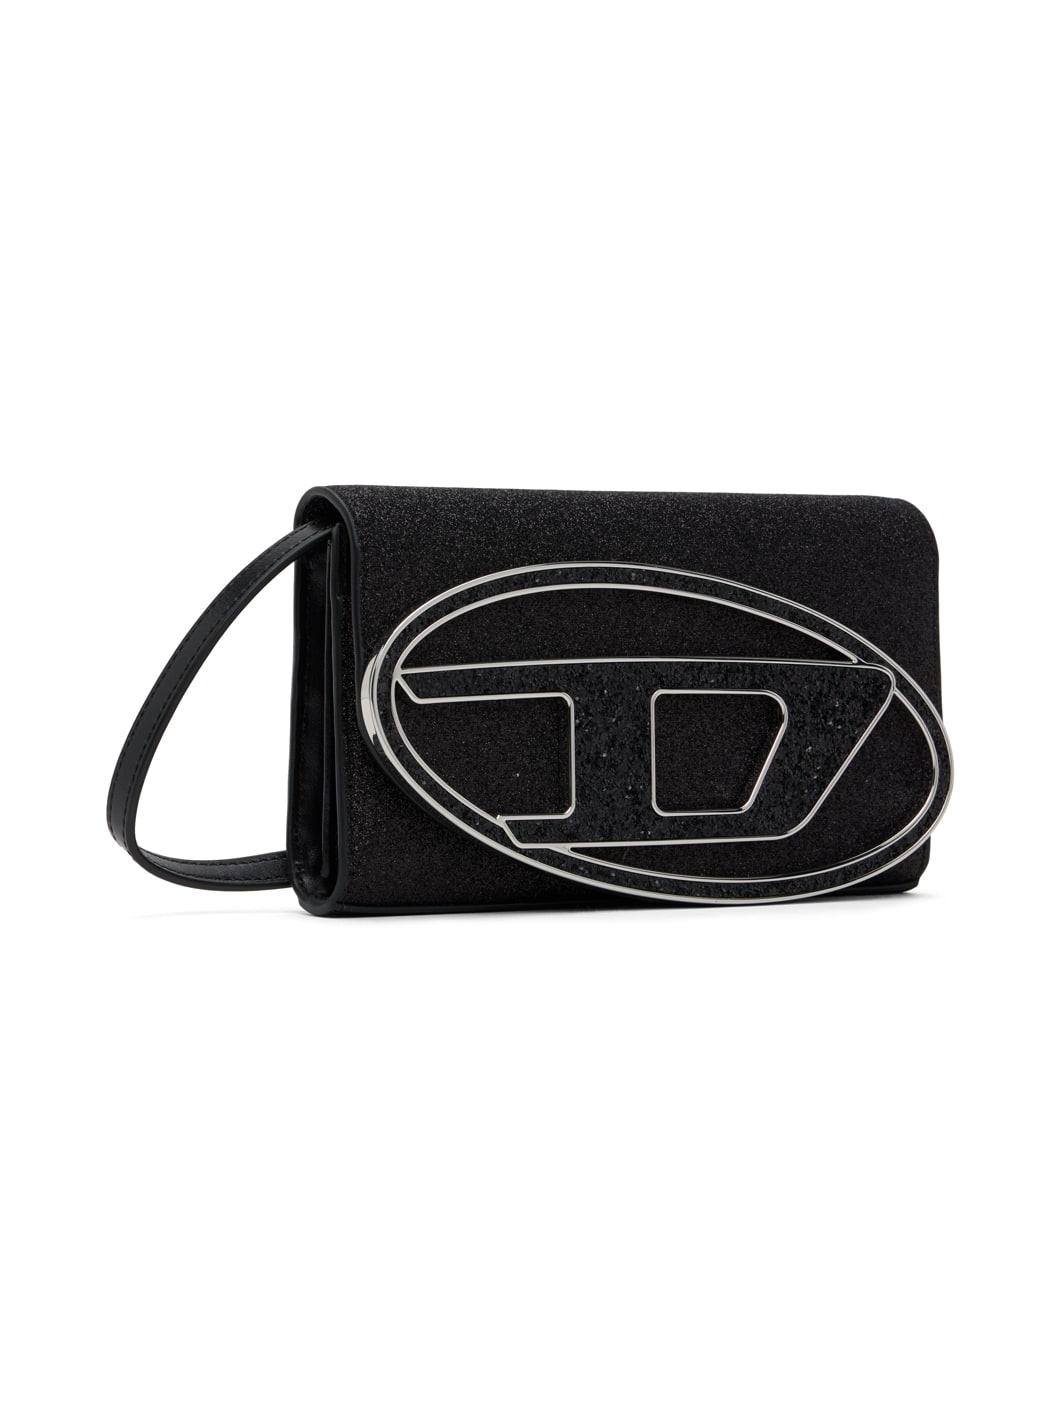 Black 1dr Wallet Strap Bag - 2